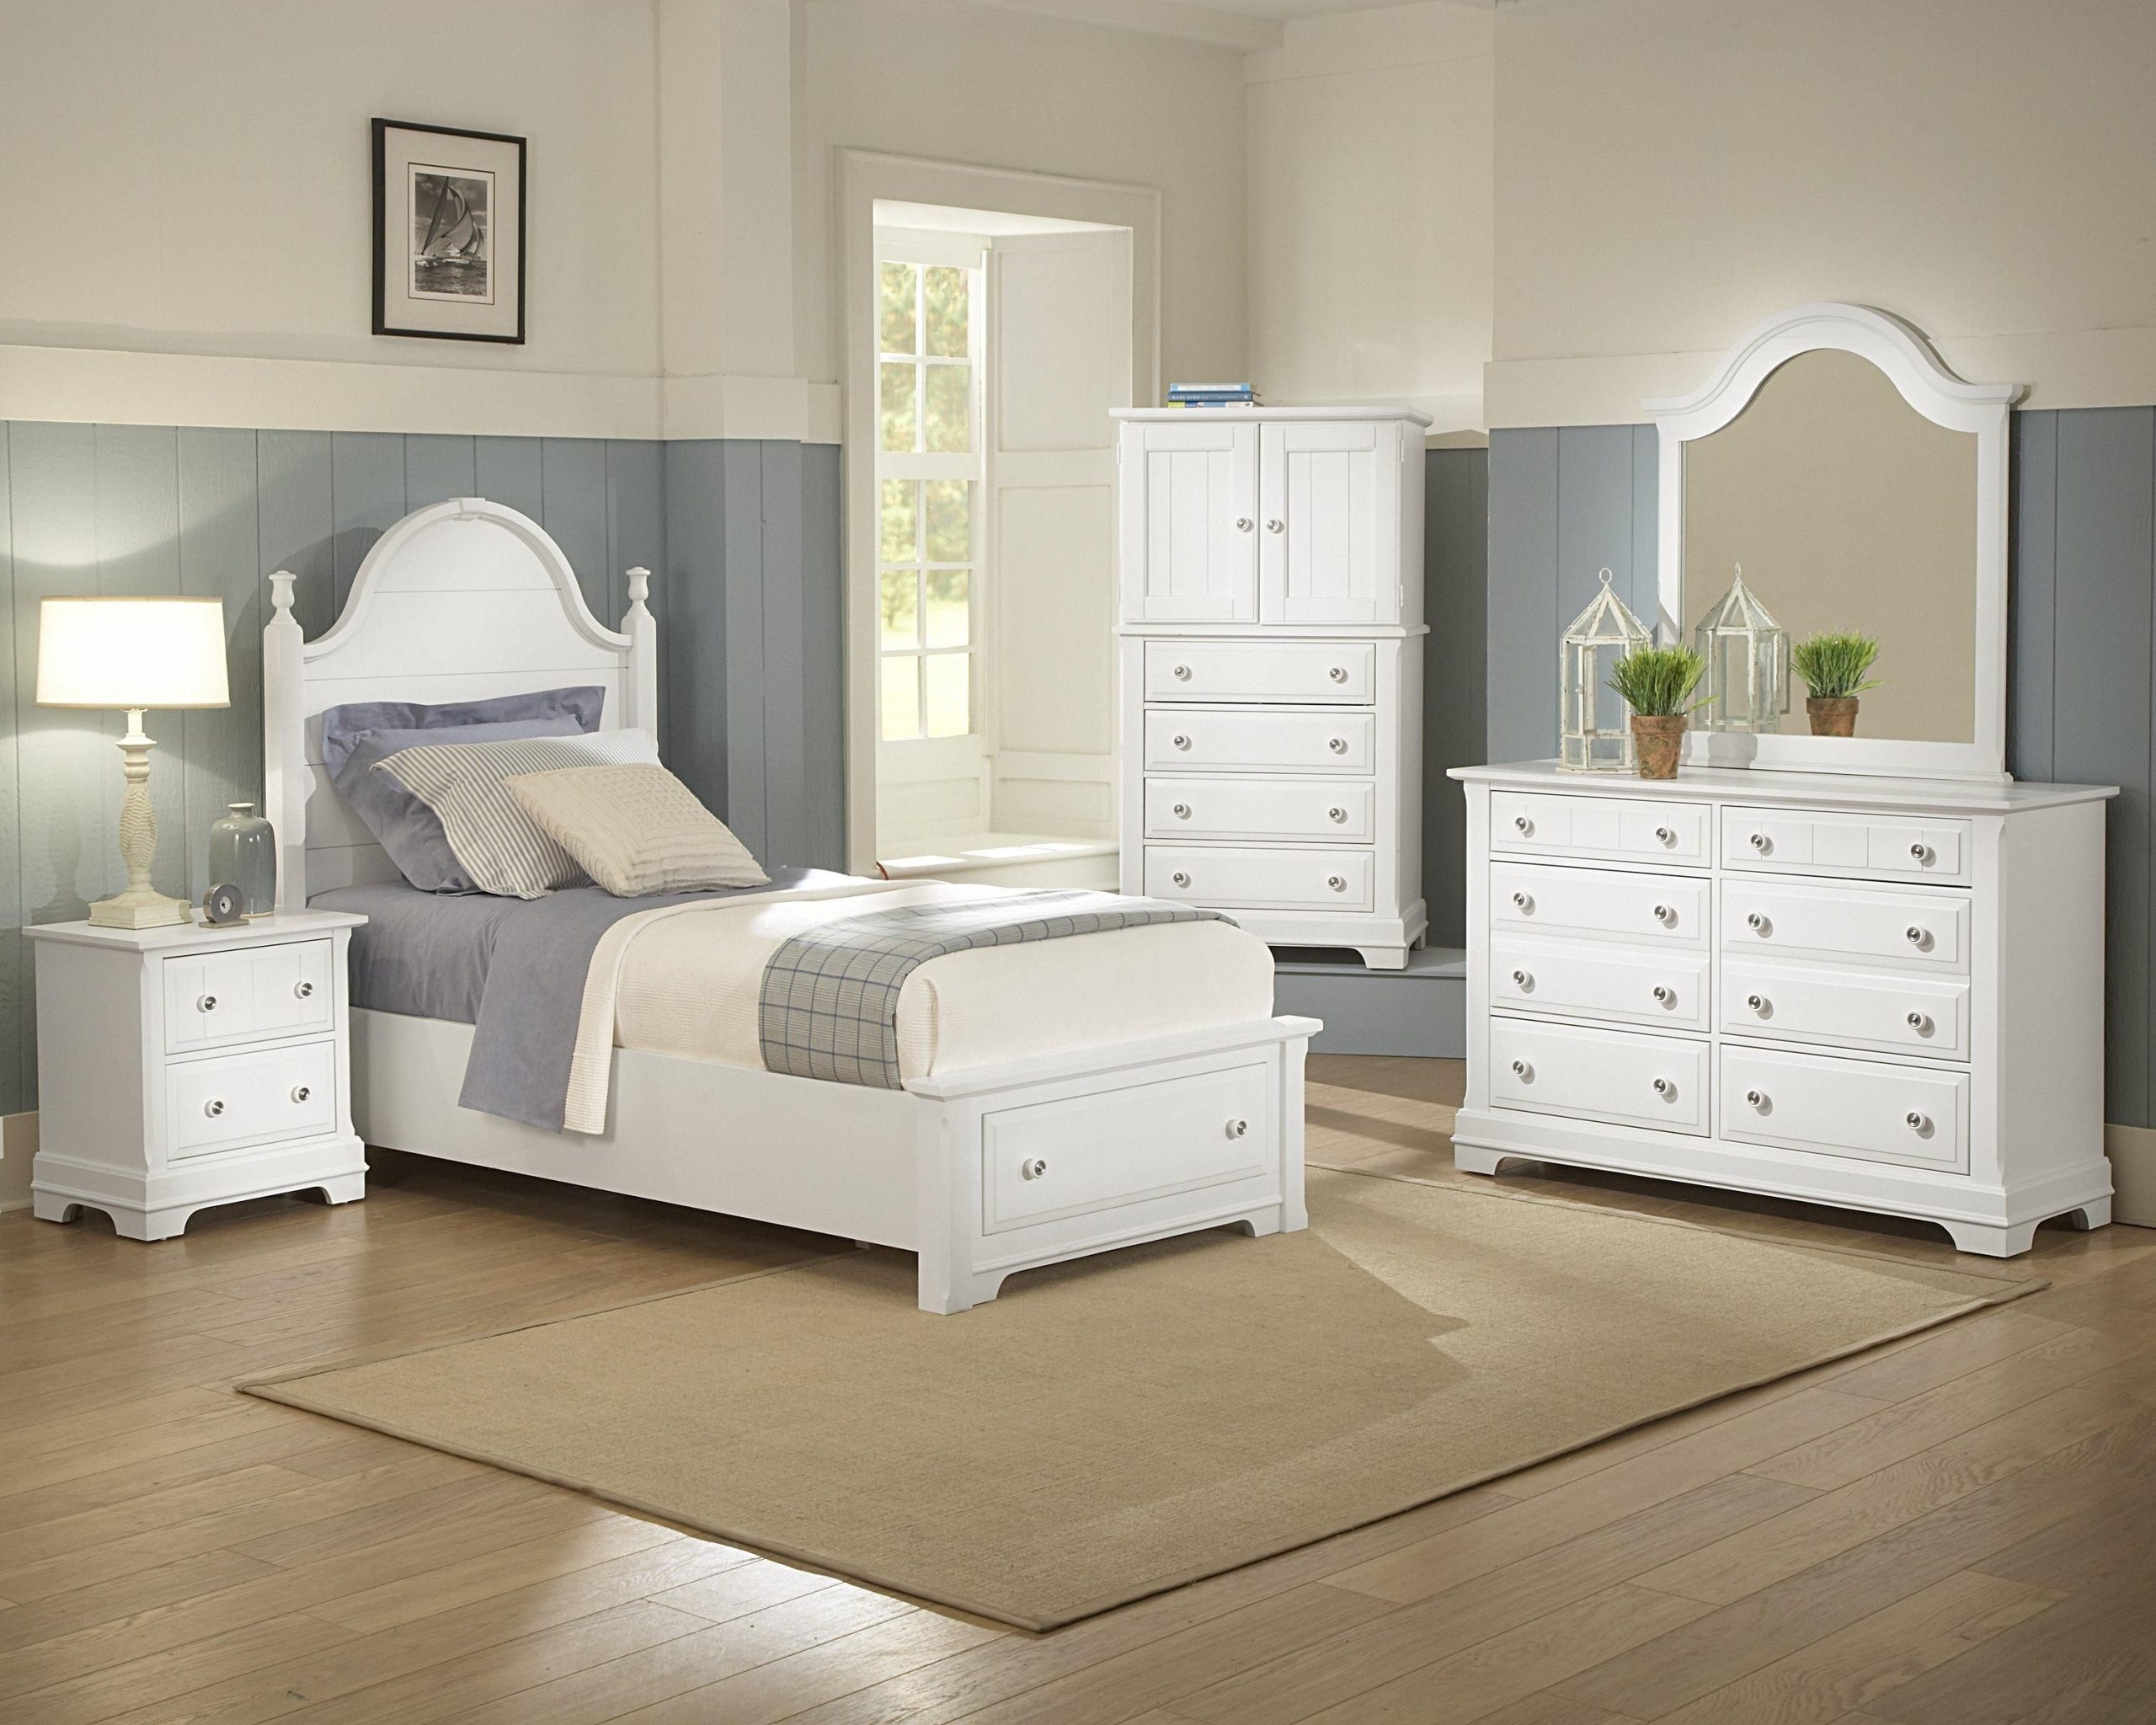 bassett bedroom furniture used